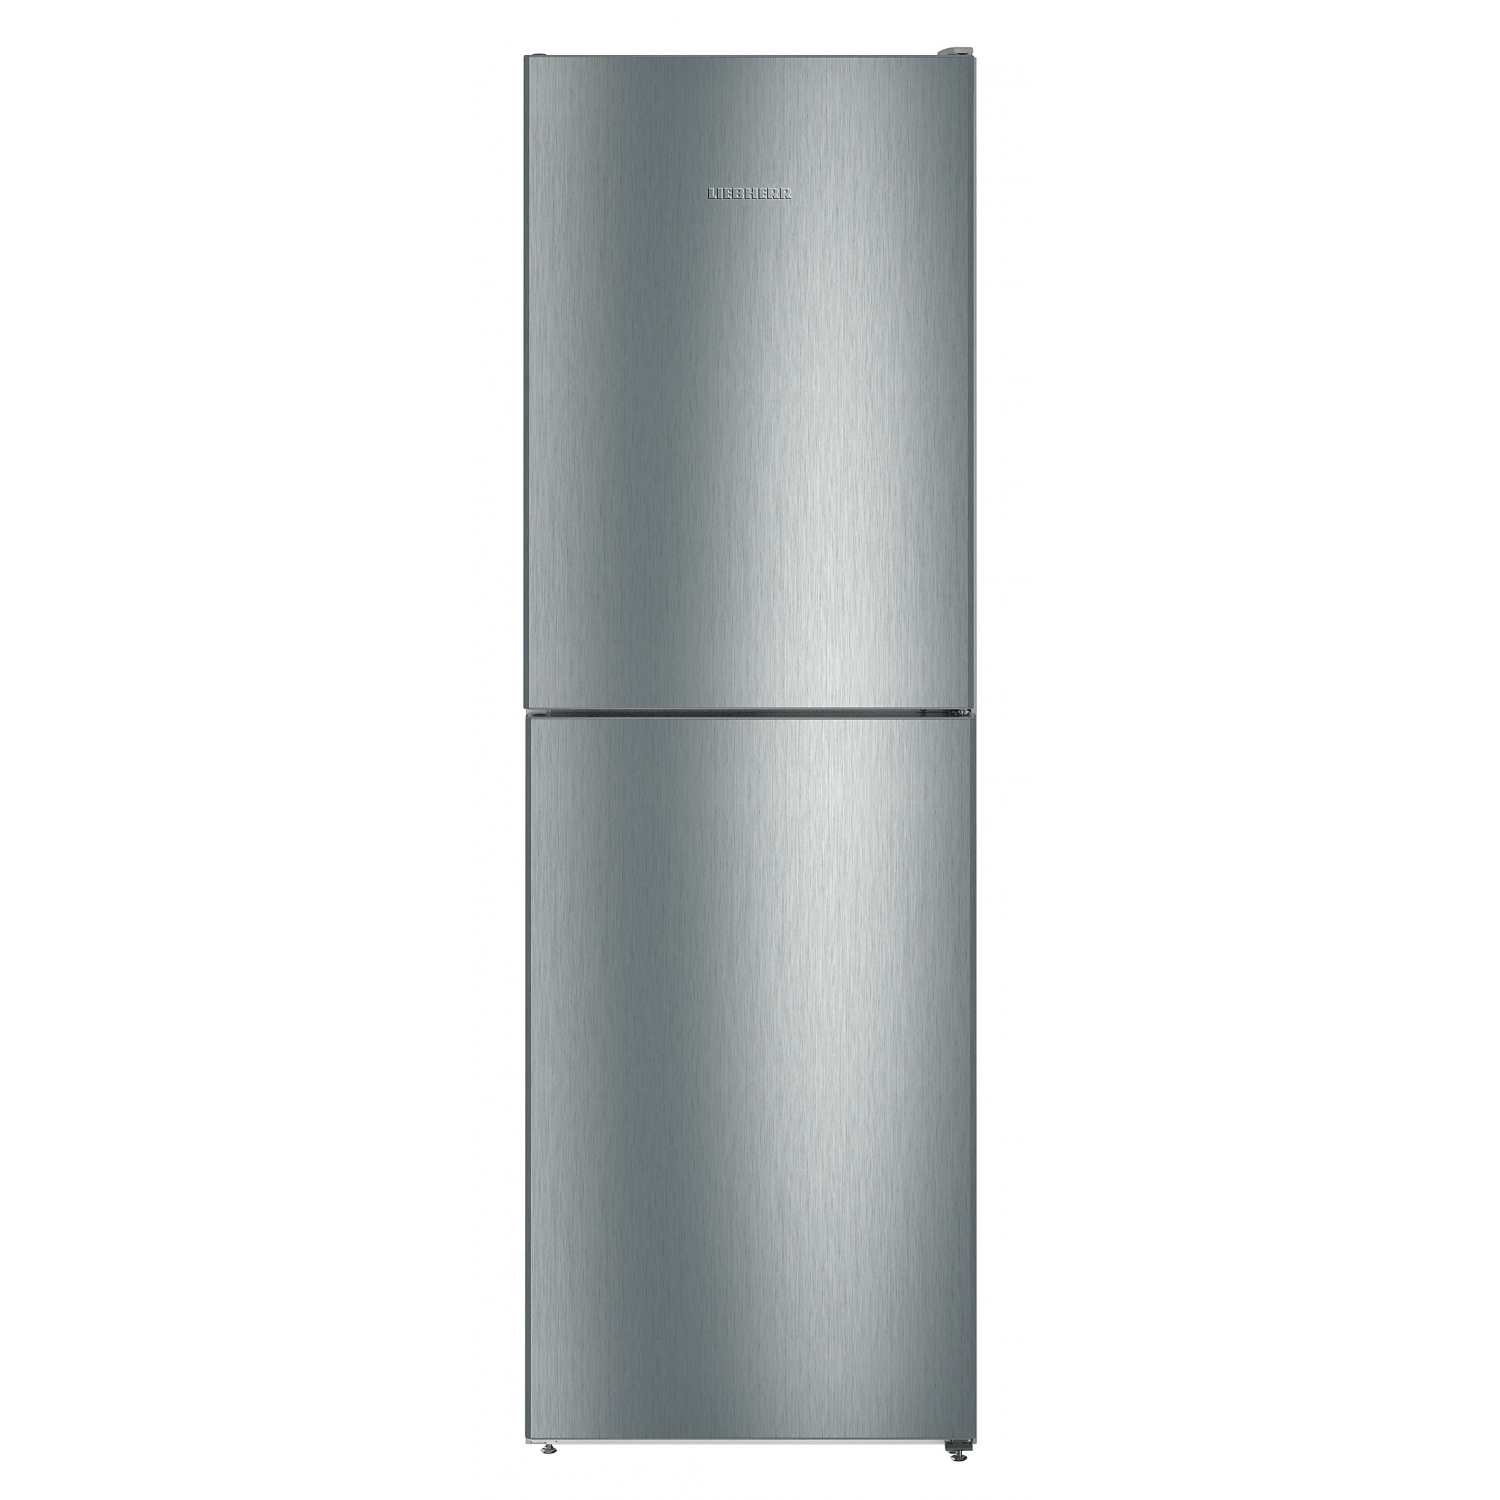 Liebherr 60cm Fridge Freezer with NoFrost - 0